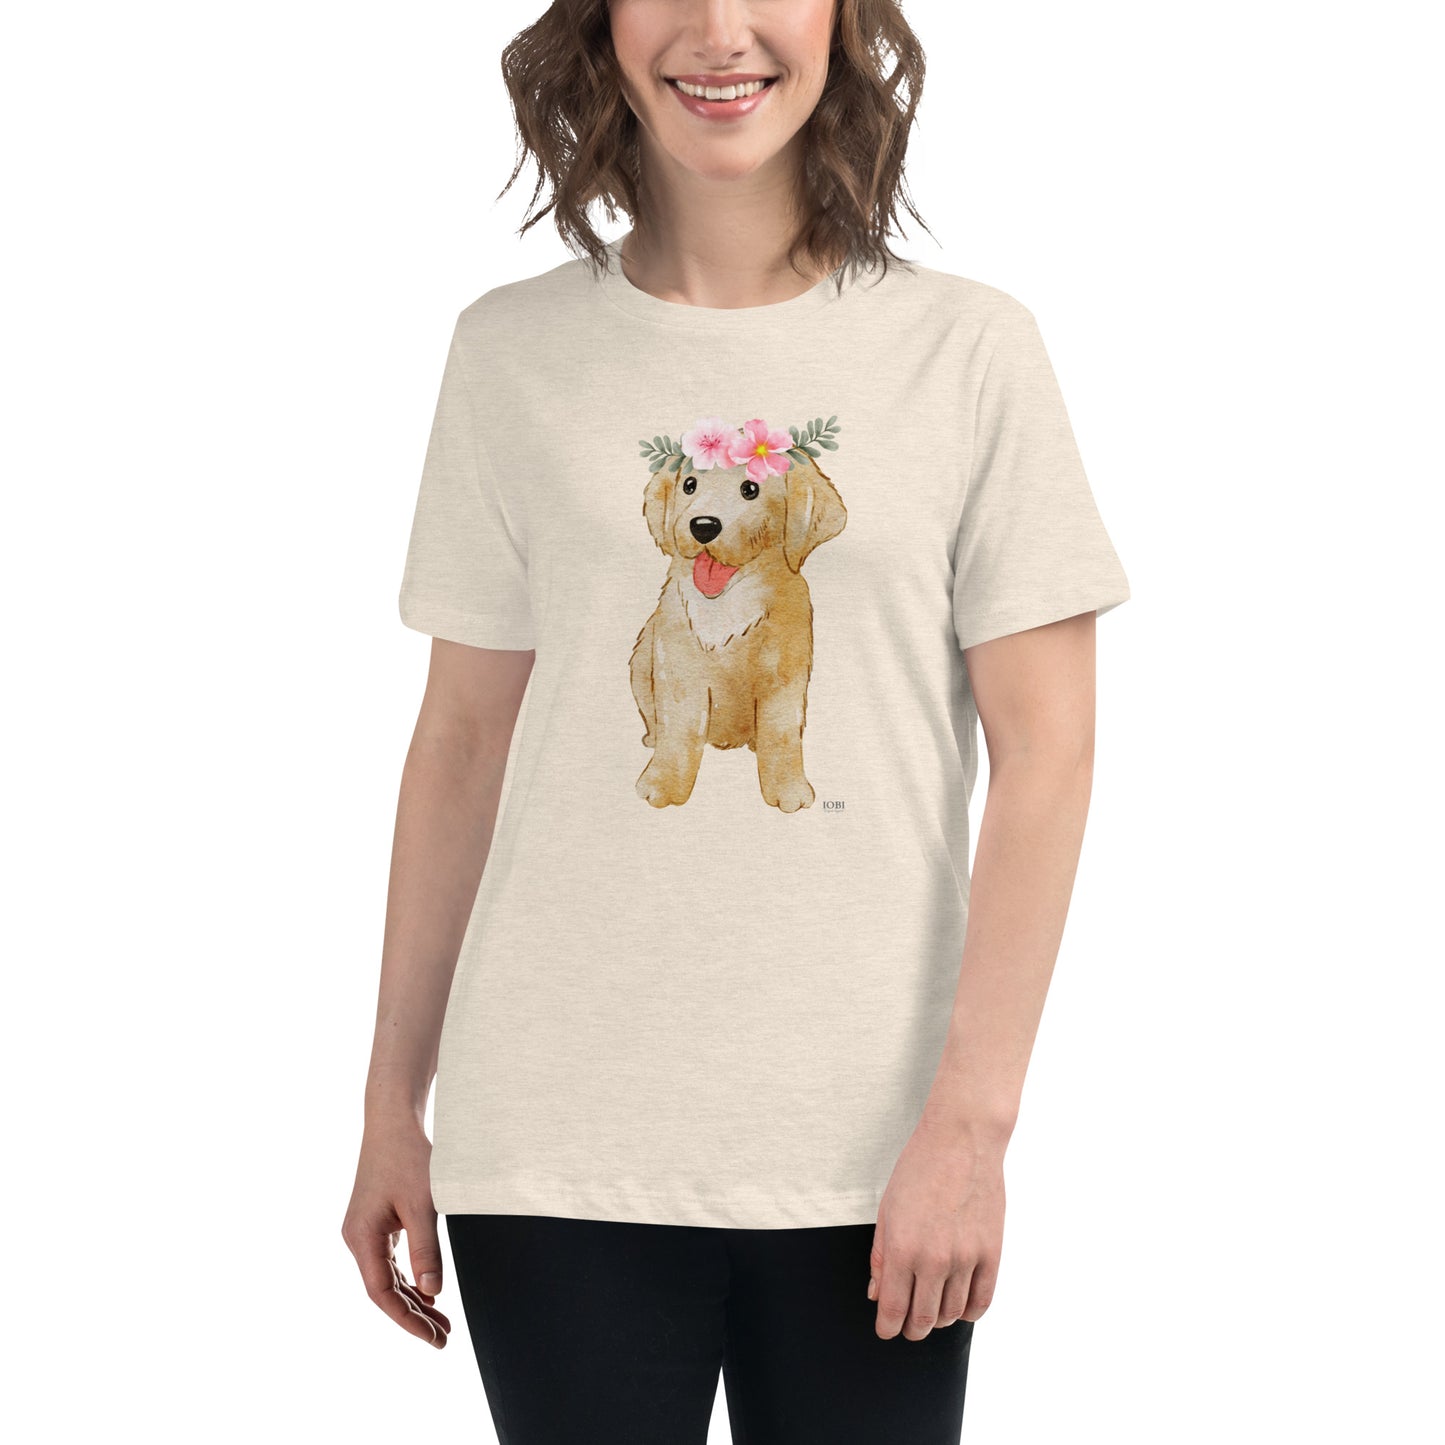 Women's Relaxed Soft & Smooth Premium Quality T-Shirt Labrador Puppy Dog Design by IOBI Original Apparel